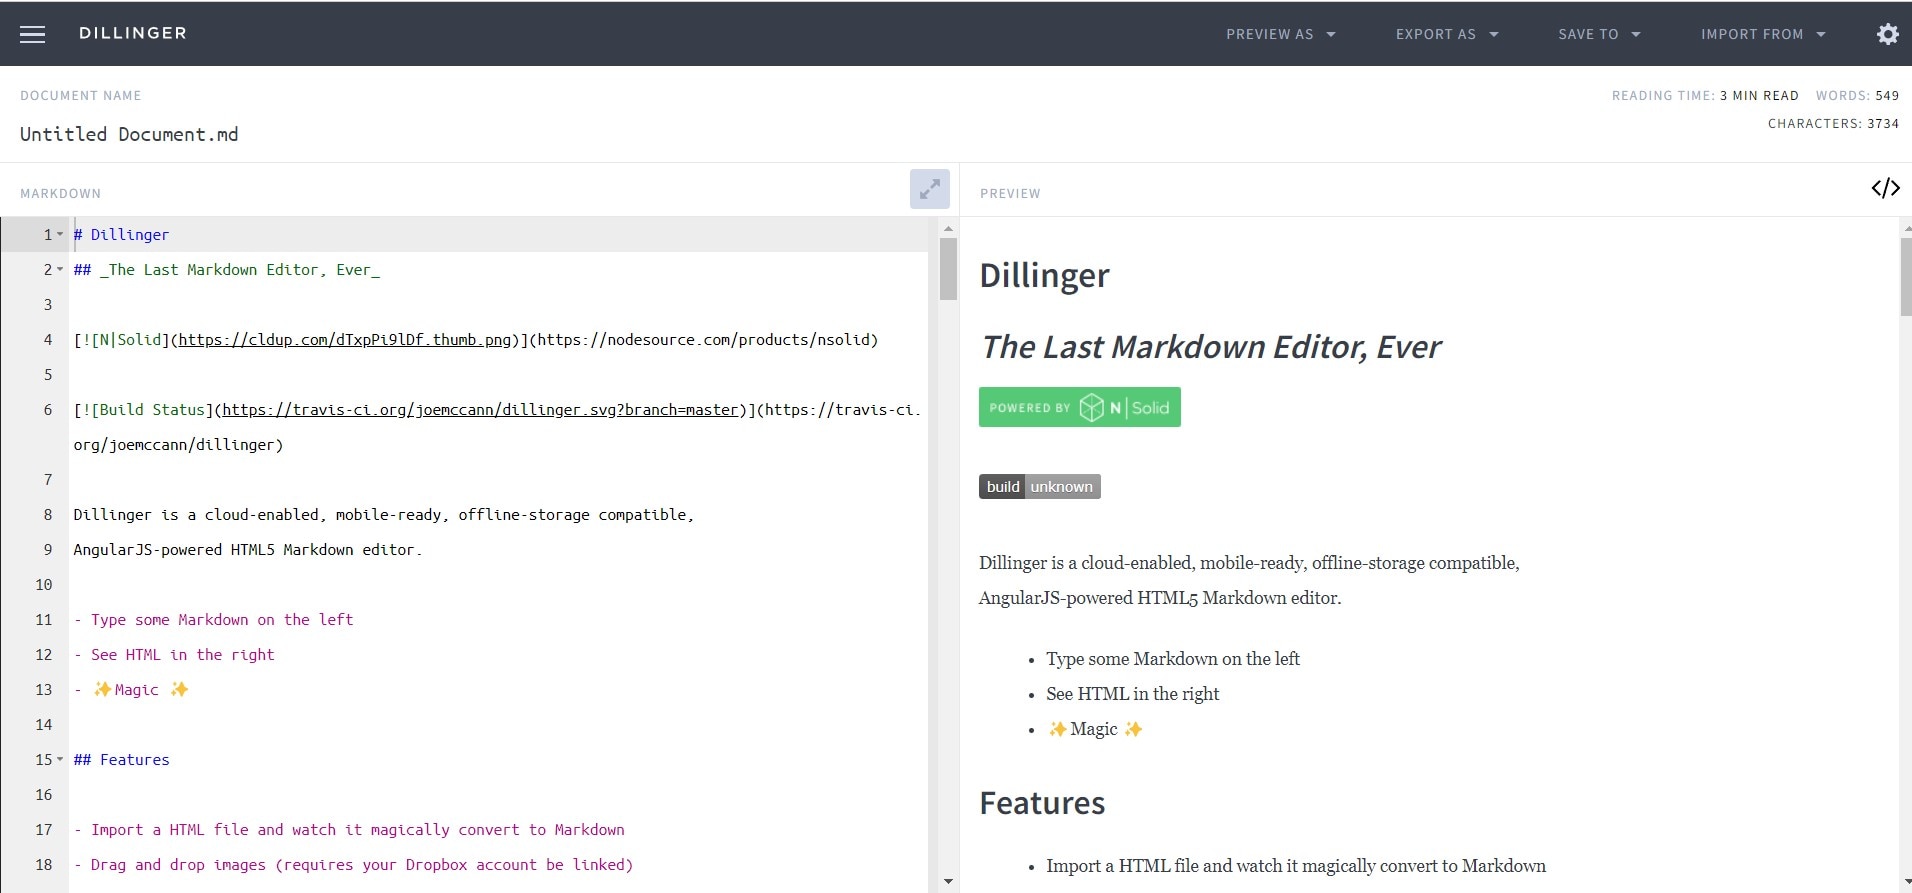 O Dillinger é uma ferramenta de visualização de Markdown baseada na web que visa proporcionar uma experiência de escrita concentrada e eficiente.